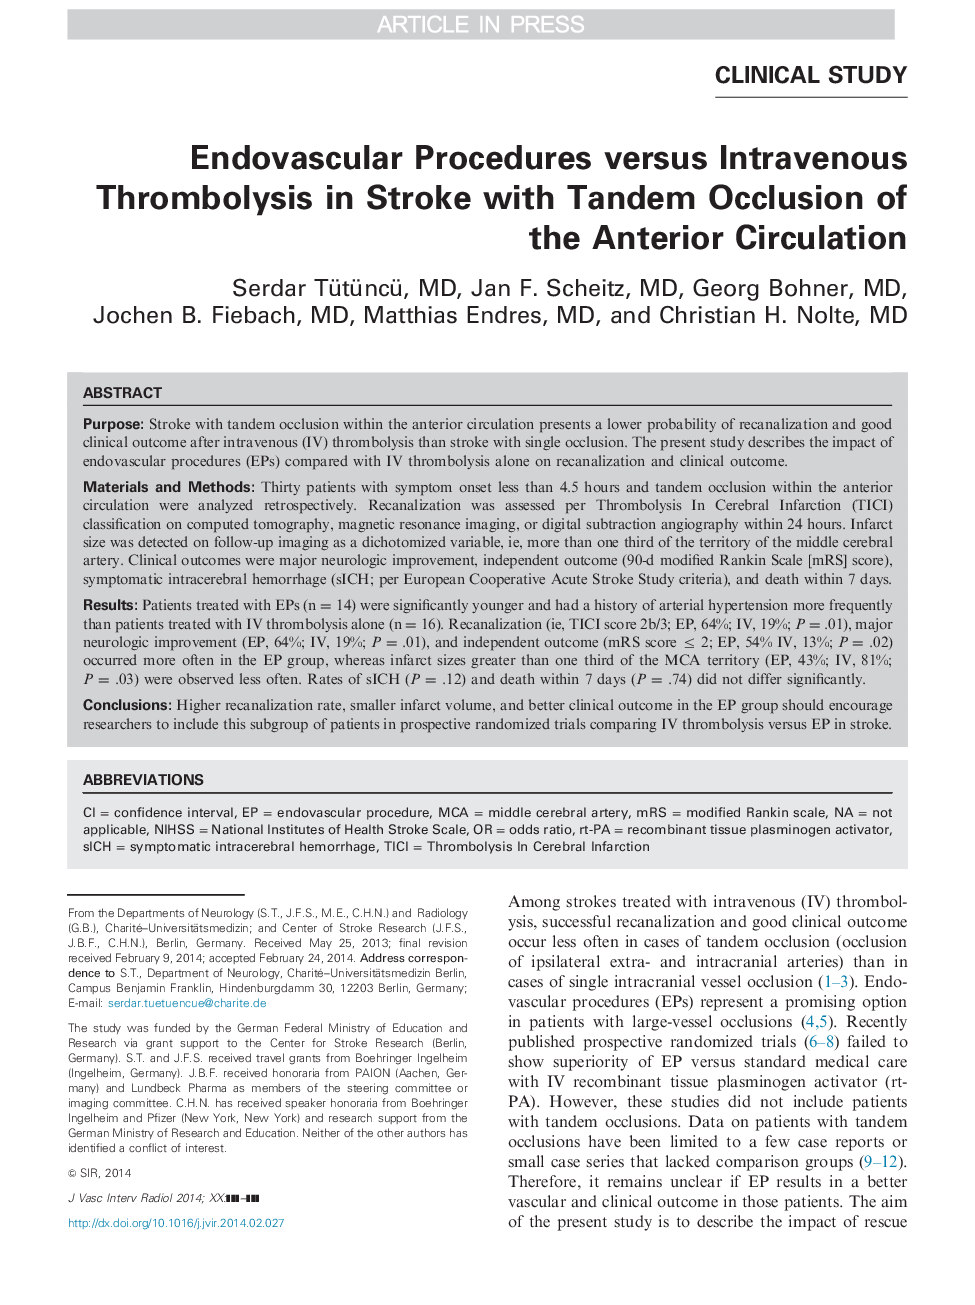 روشهای آندوواسکولیک در برابر ترومبولیز وریدی در سکته مغزی با تاندوم انسداد گردش خون 